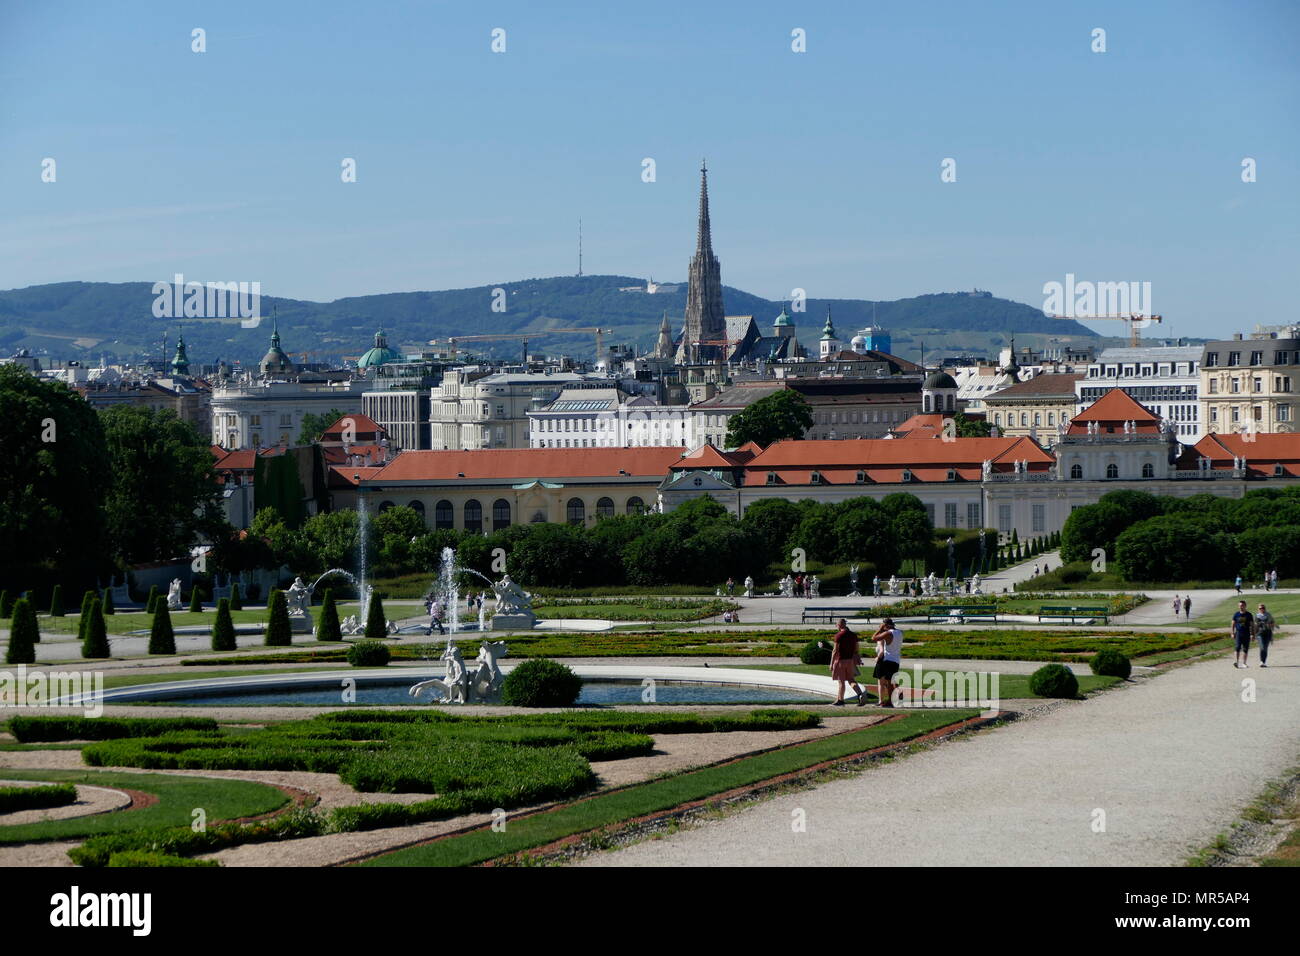 Fotografia dei giardini del Palazzo Belvedere, Vienna, Austria. Il Belvedere è uno storico palazzo barocco, impostato in un parco barocco paesaggio nel terzo distretto della città, su spigolo sud-est del suo centro. Essa ospita il Museo Belvedere Foto Stock